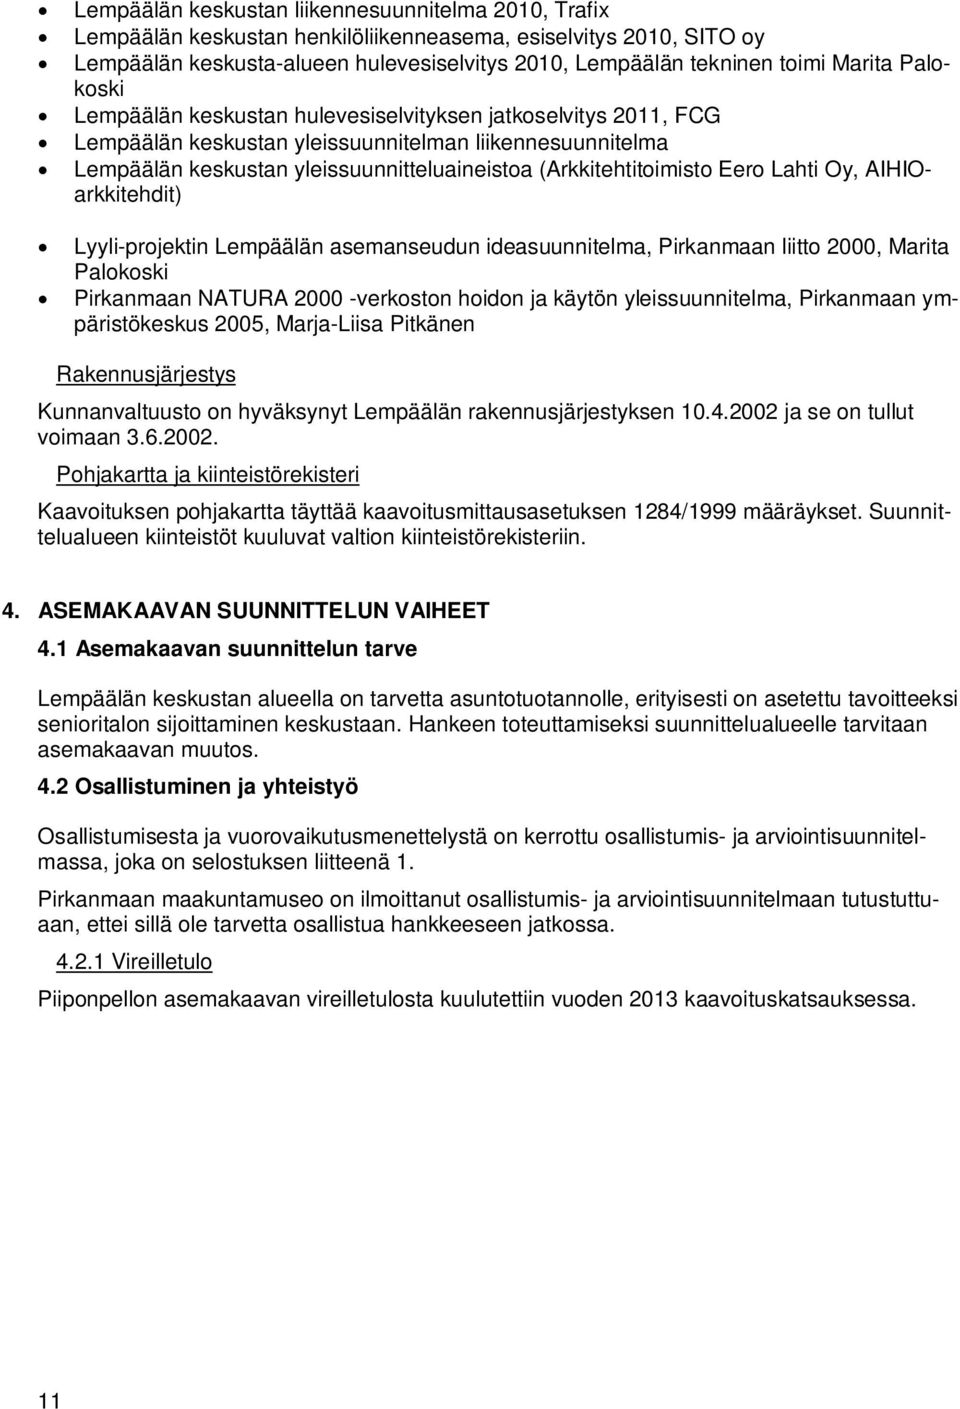 (Arkkitehtitoimisto Eero Lahti Oy, AIHIOarkkitehdit) Lyyli-projektin Lempäälän asemanseudun ideasuunnitelma, Pirkanmaan liitto 2000, Marita Palokoski Pirkanmaan NATURA 2000 -verkoston hoidon ja